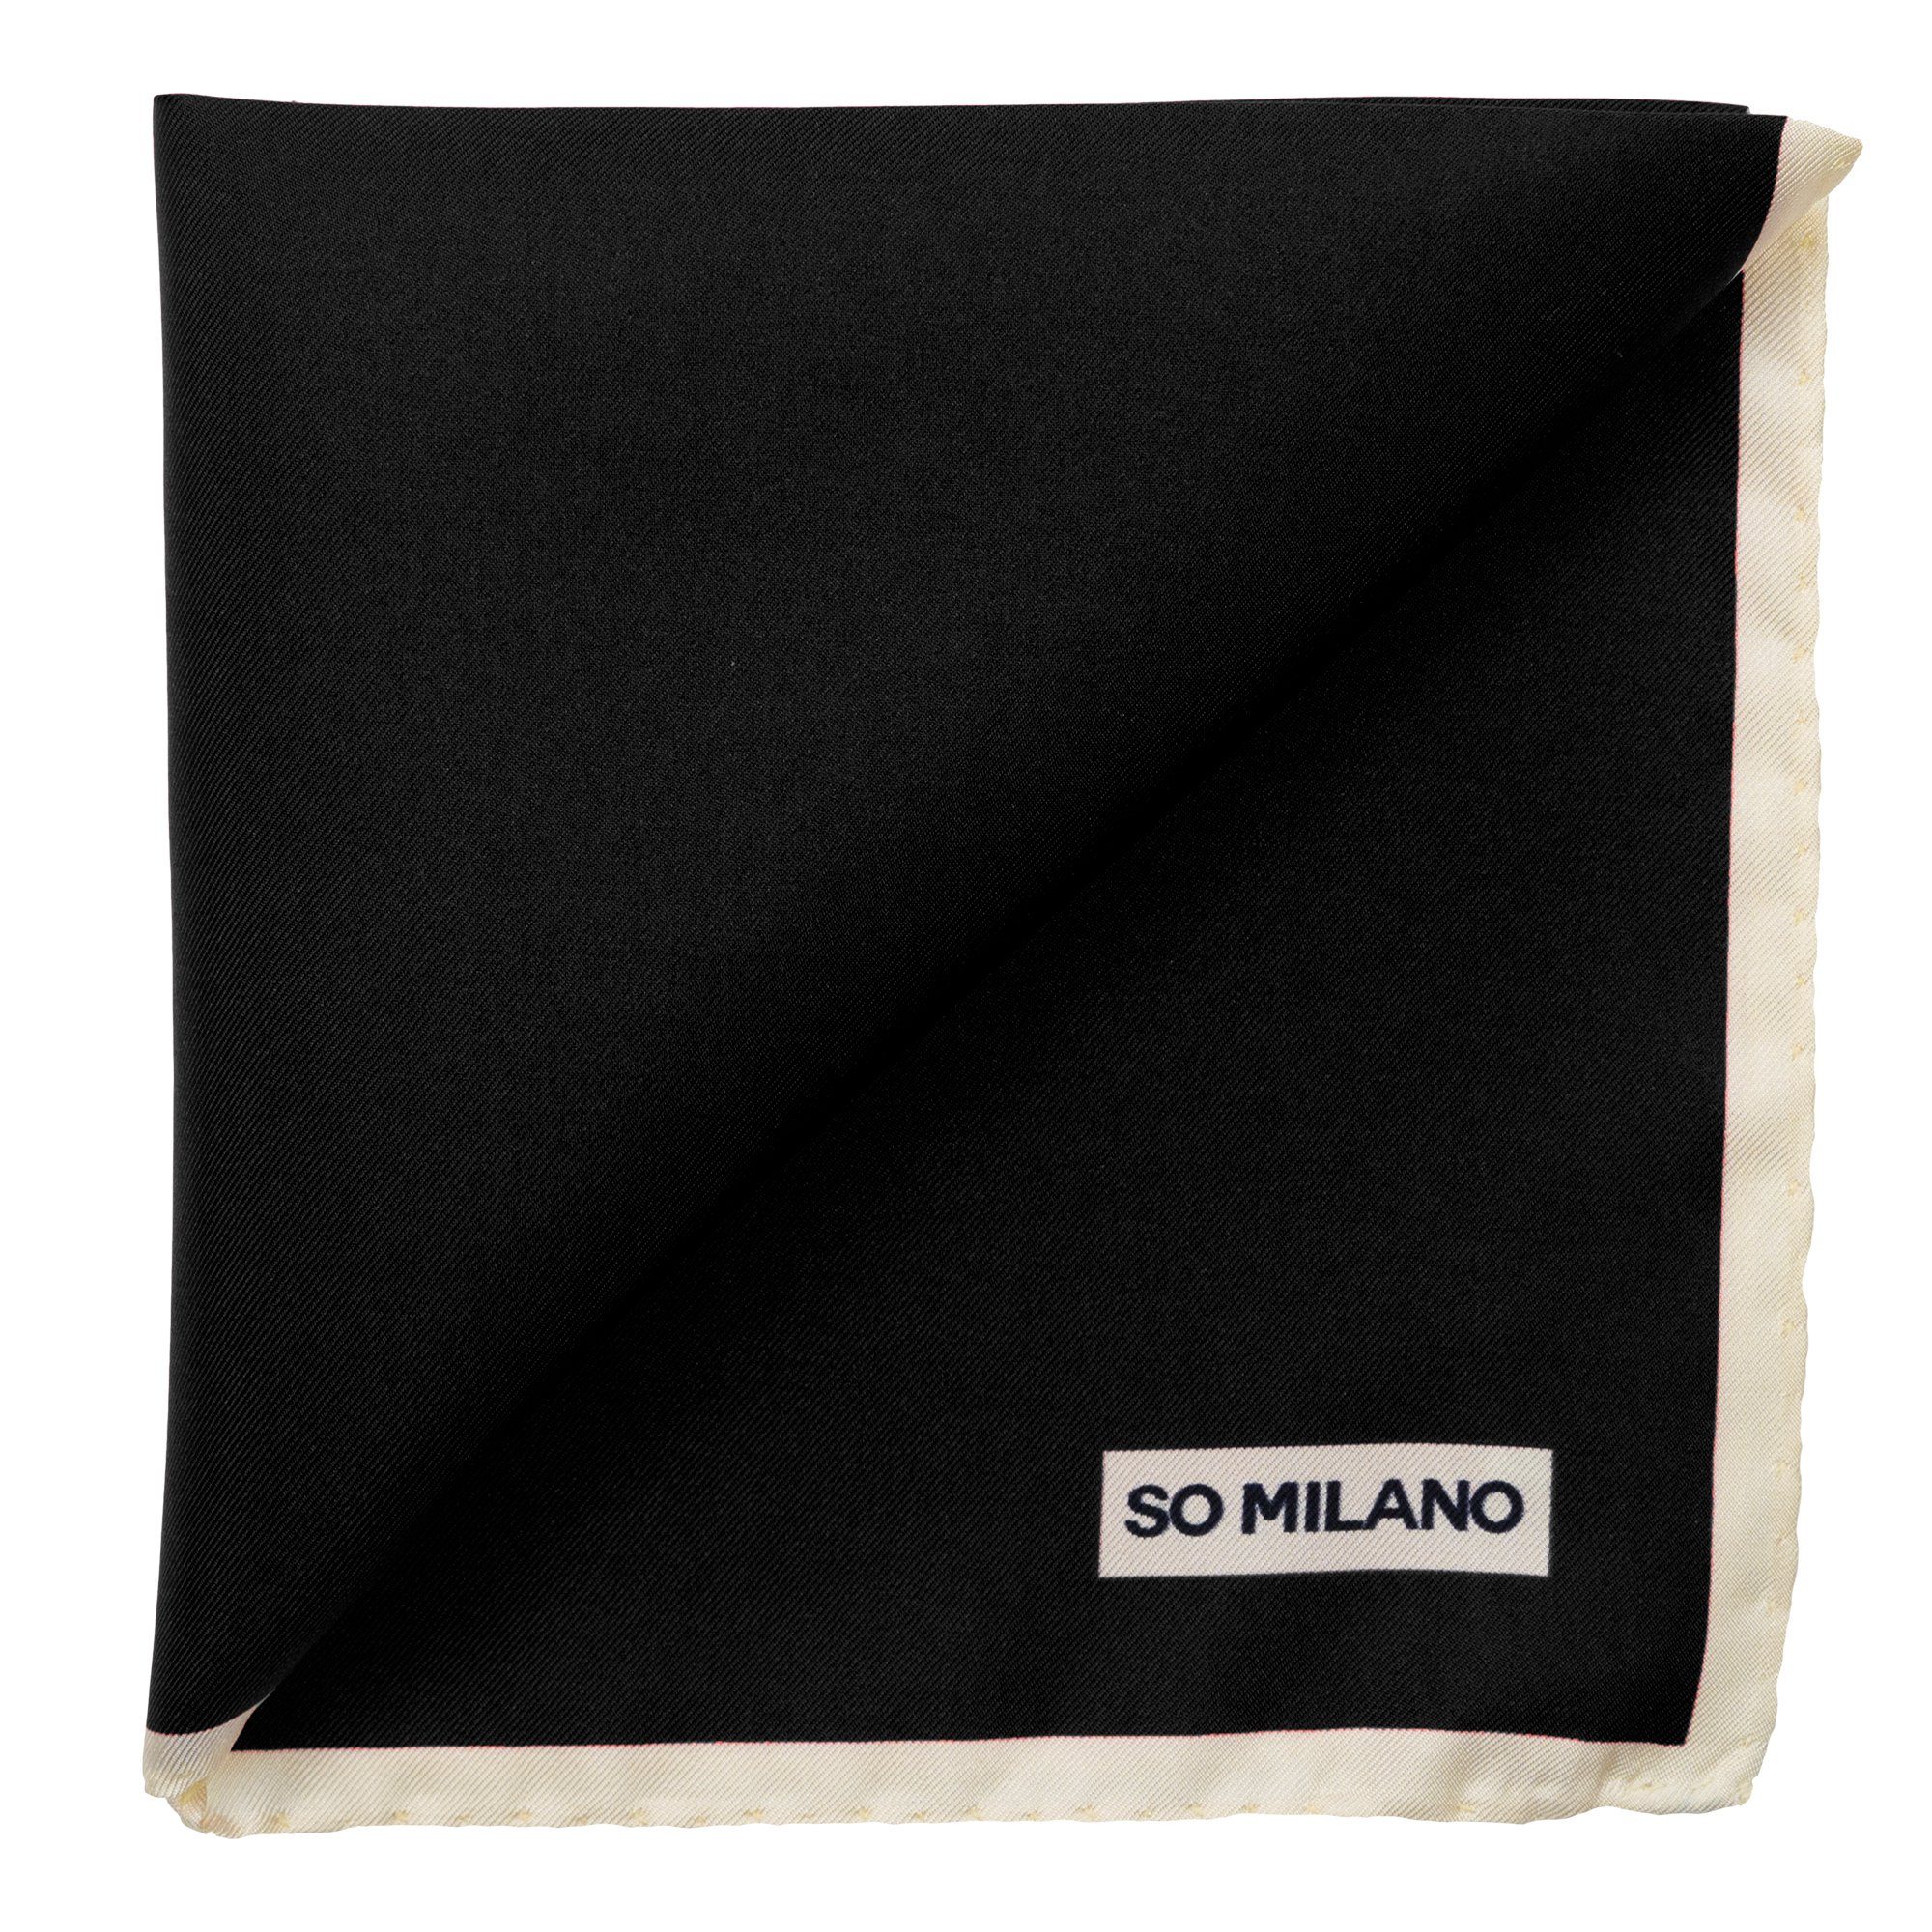 So Milano Einstecktuch Made in Schwarz Italy EDGE